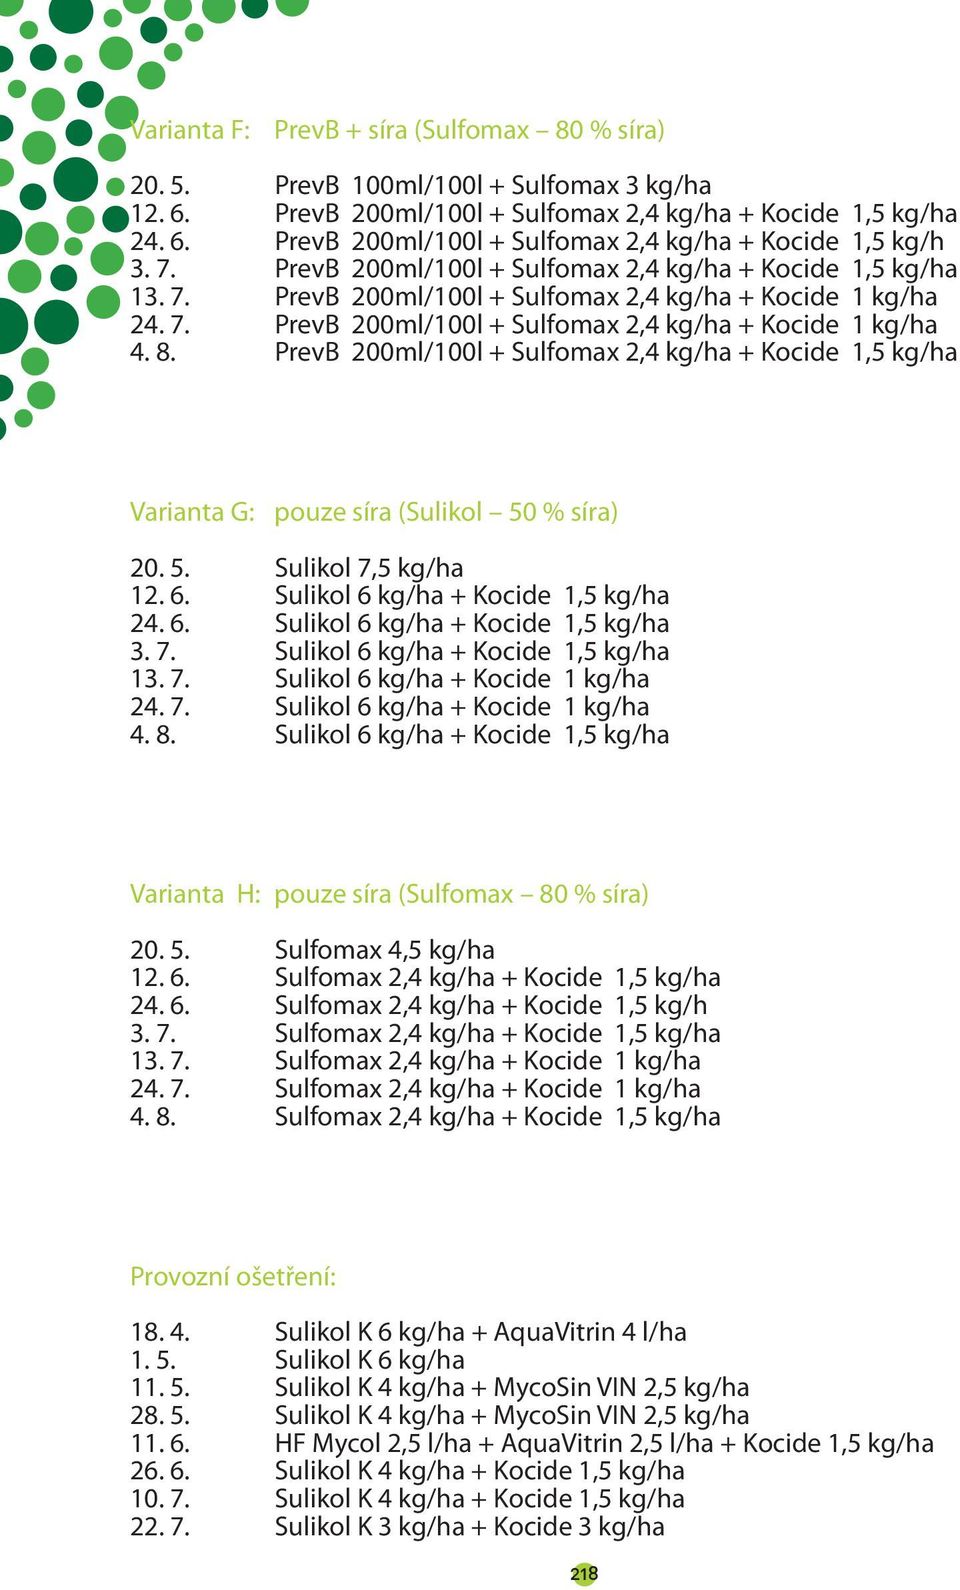 PrevB 200ml/100l + Sulfomax 2,4 kg/ha + Kocide 1,5 kg/ha Varianta G: pouze síra (Sulikol 50 % síra) 20. 5. Sulikol 7,5 kg/ha 12. 6. Sulikol 6 kg/ha + Kocide 1,5 kg/ha 24. 6. Sulikol 6 kg/ha + Kocide 1,5 kg/ha 3.